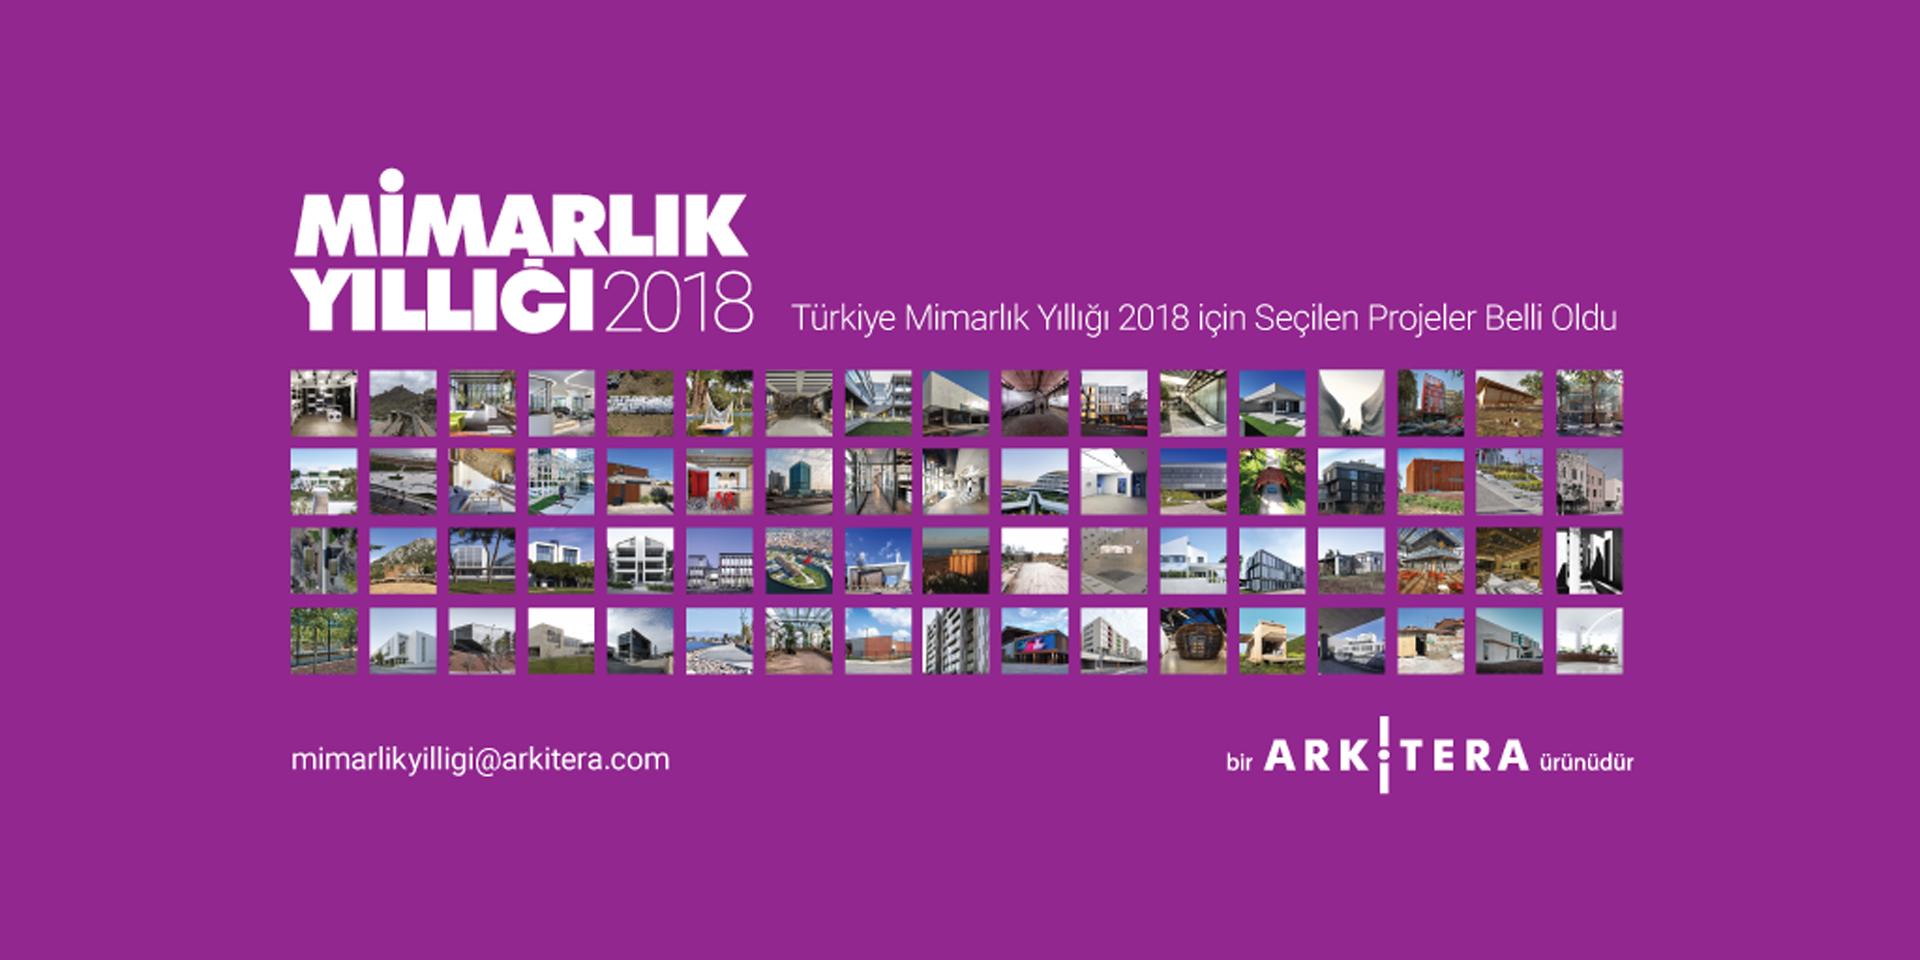 2019 // Arkitera - Turkey Architecture Yearbook 2018